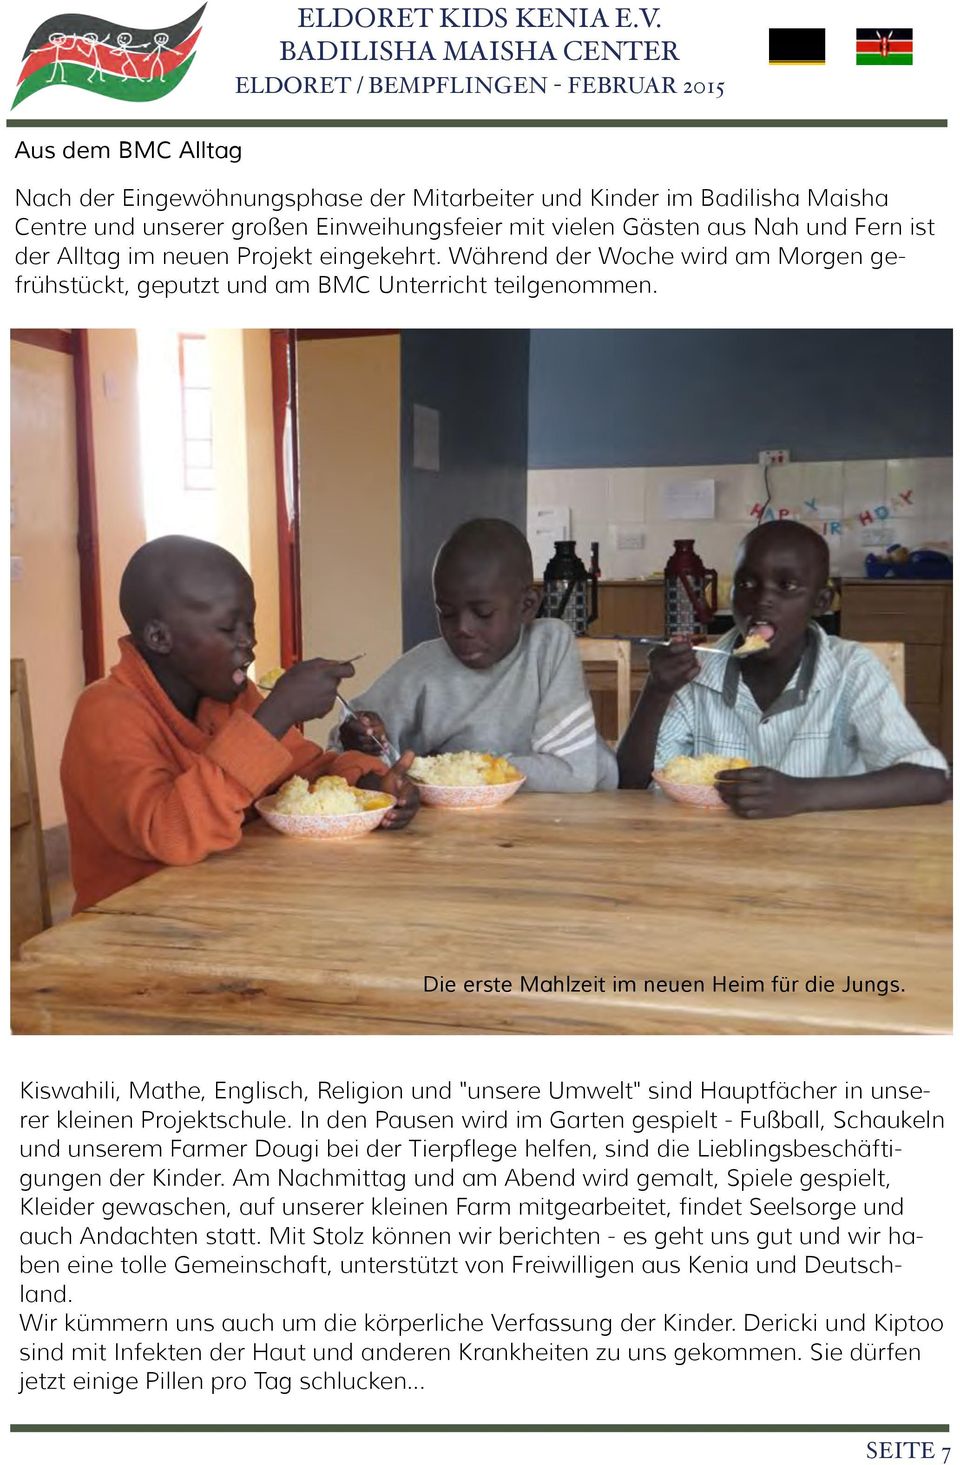 Kiswahili, Mathe, Englisch, Religion und "unsere Umwelt" sind Hauptfächer in unserer kleinen Projektschule.